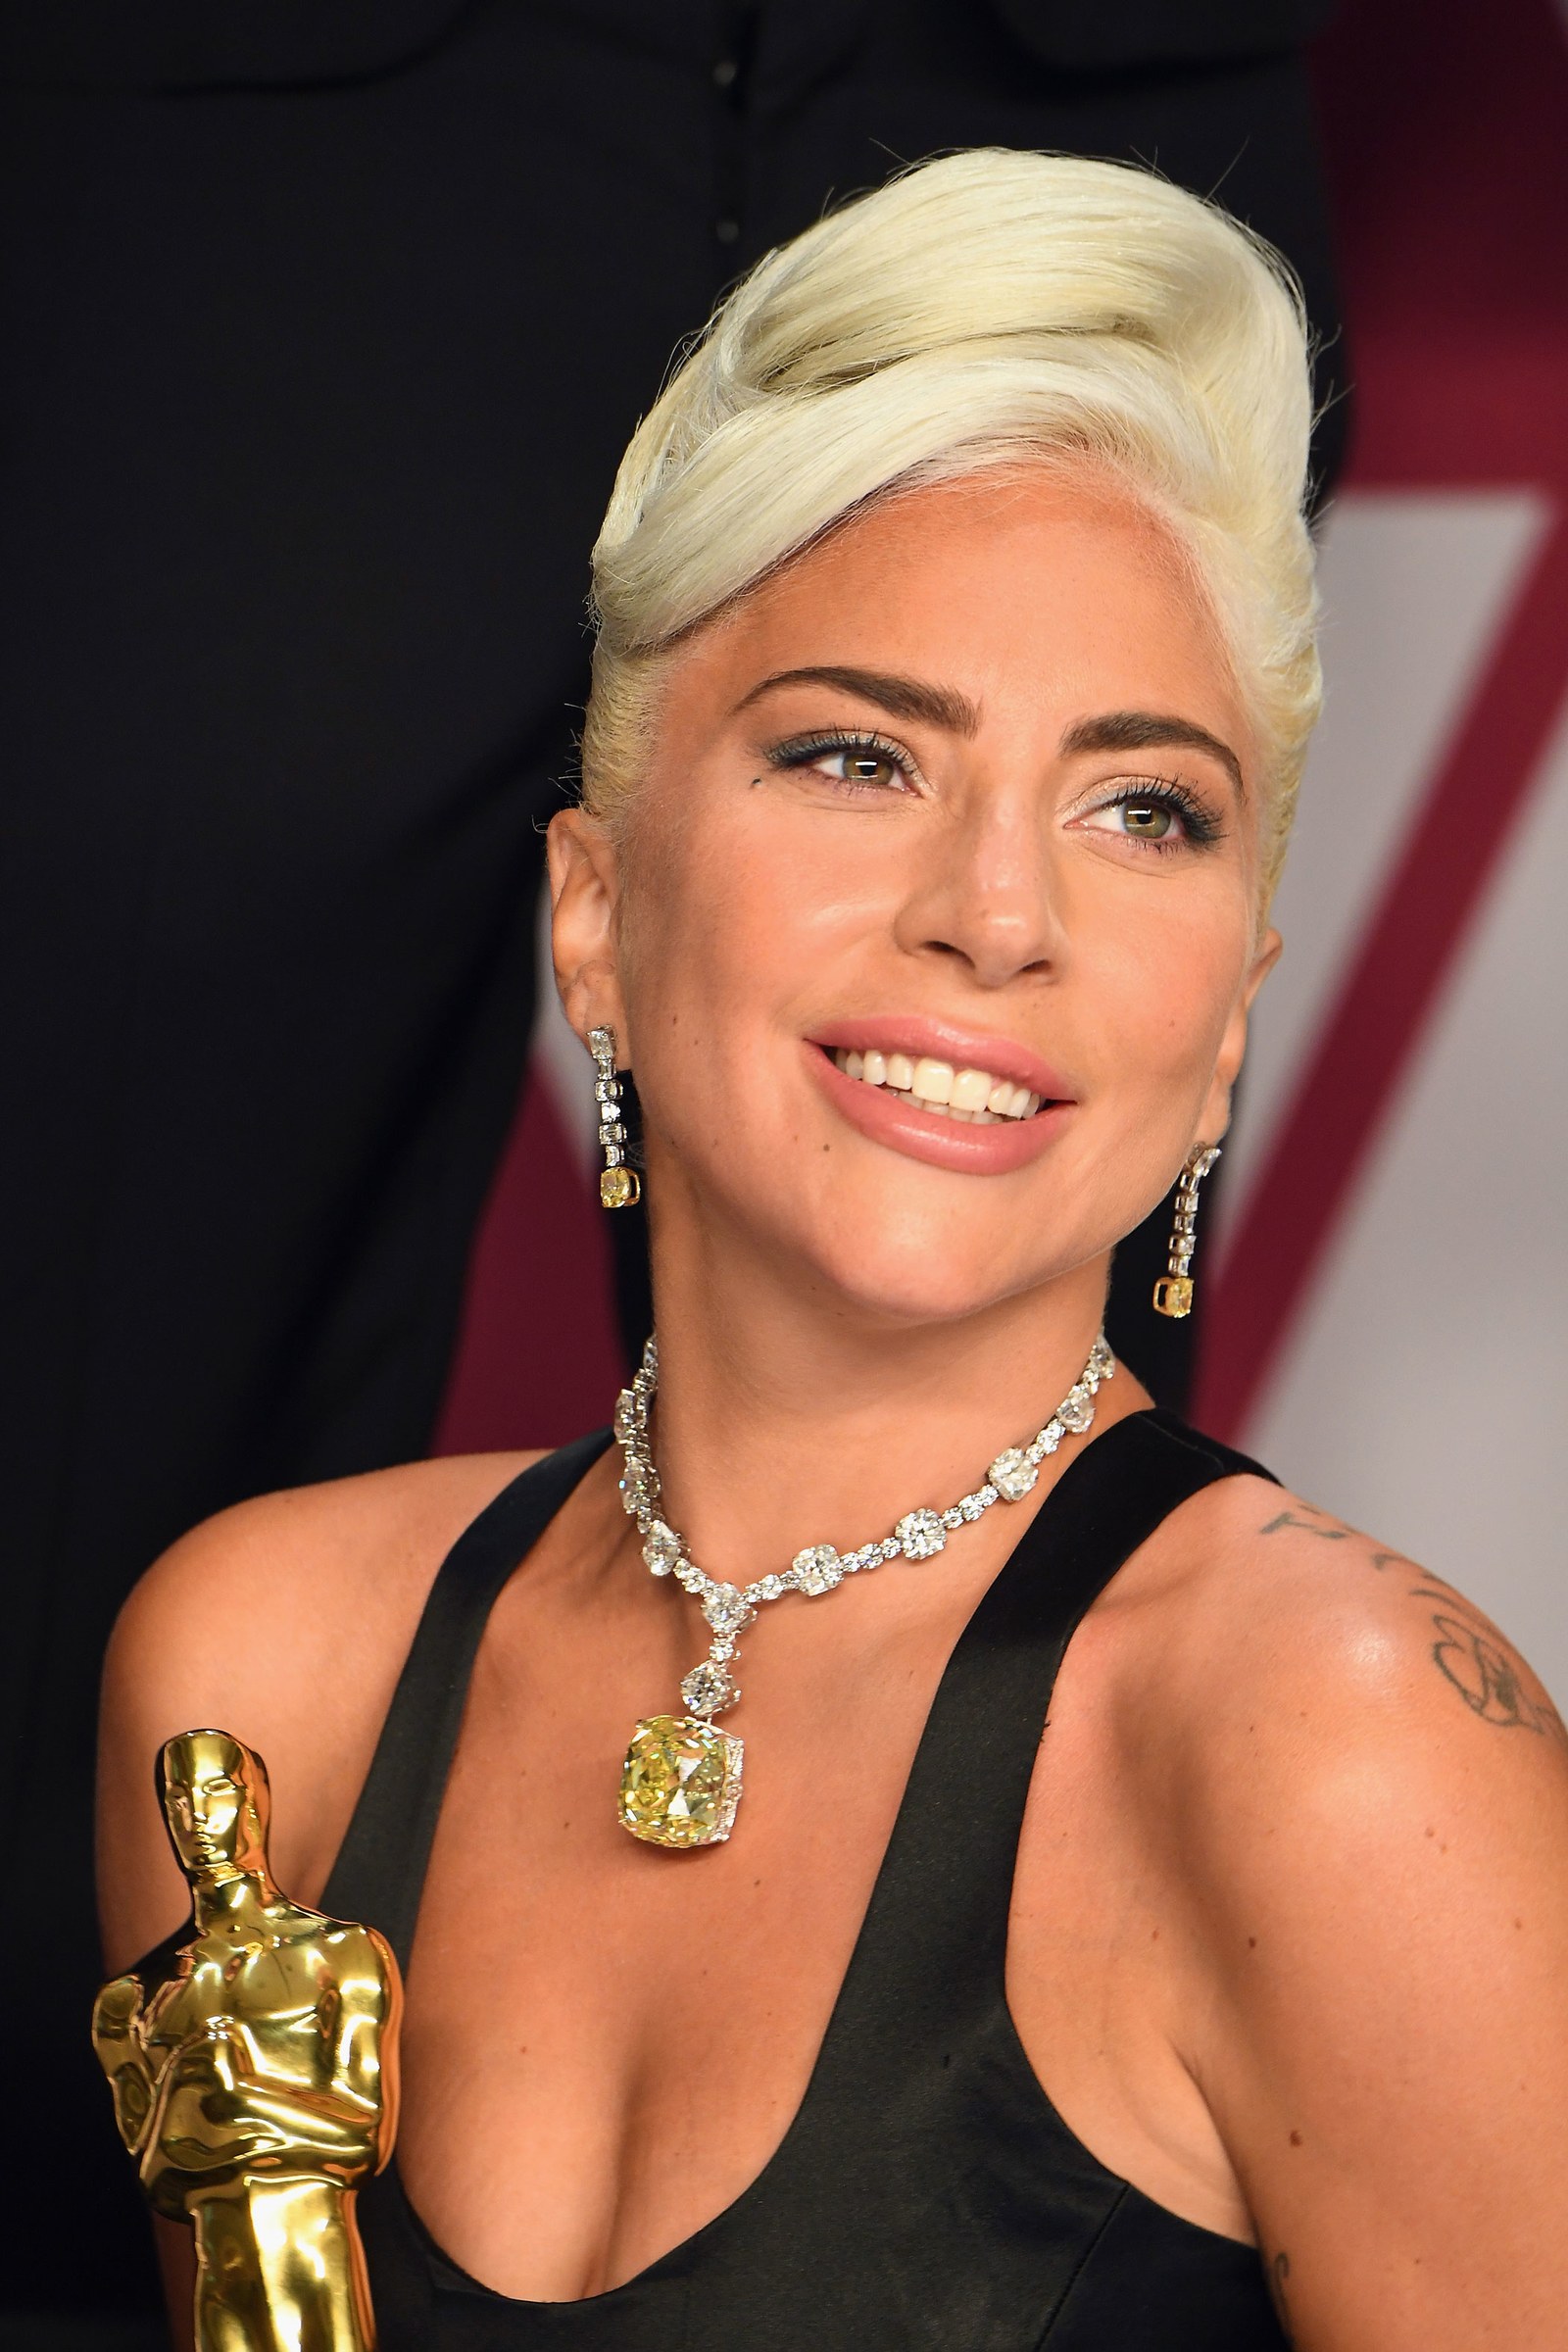 Kim cương Tiffany &amp; Co. 128-carat của Lady Gaga tại lễ trao giải Academy: Lễ trao giải Oscar lần thứ 91 đánh dấu một trong những đêm lớn nhất trong sự nghiệp của Lady Gaga.&nbsp;Được đề cử cho cuộc hẹn hò với nông dân, cuộc song ca của cô với&nbsp;A Star is Born,&nbsp;bạn diễn của Bradley Cooper, cô đang tranh cử Oscar đầu tiên của mình và cần một cái nhìn có thể nắm bắt được tầm quan trọng của khoảnh khắc đó.&nbsp;Và trong khi chiếc váy Alexander McQueen bóng bẩy của cô ấy thật đẹp, thì chính viên kim cương Tiffany đã đưa mọi thứ lên một tầm cao mới.&nbsp;